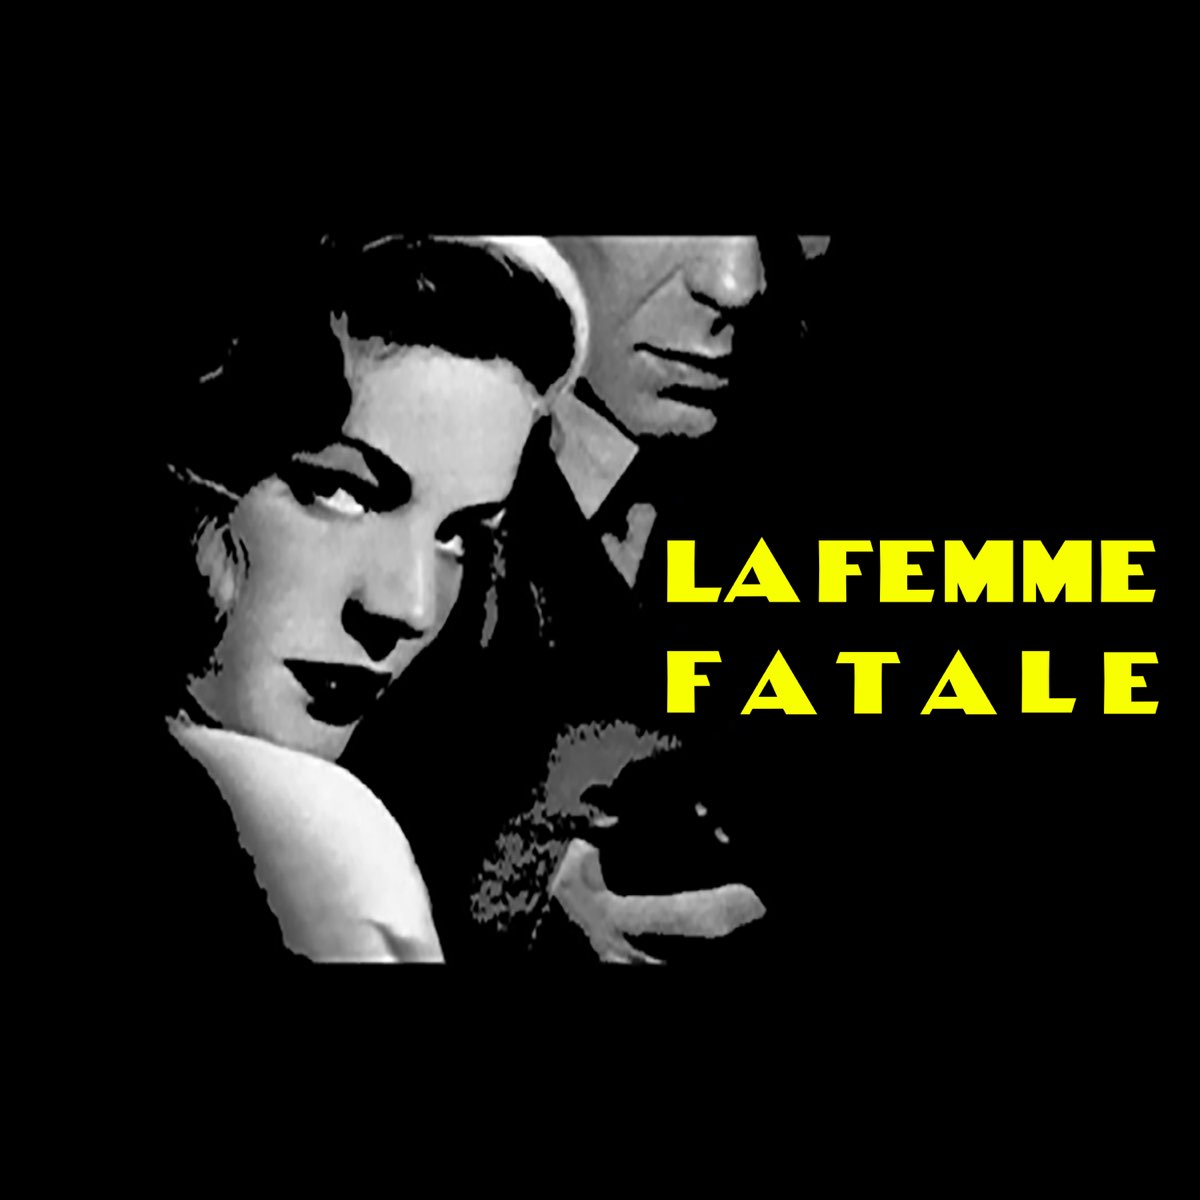 La Femme Fatale - Single - Album by Атам - Apple Music